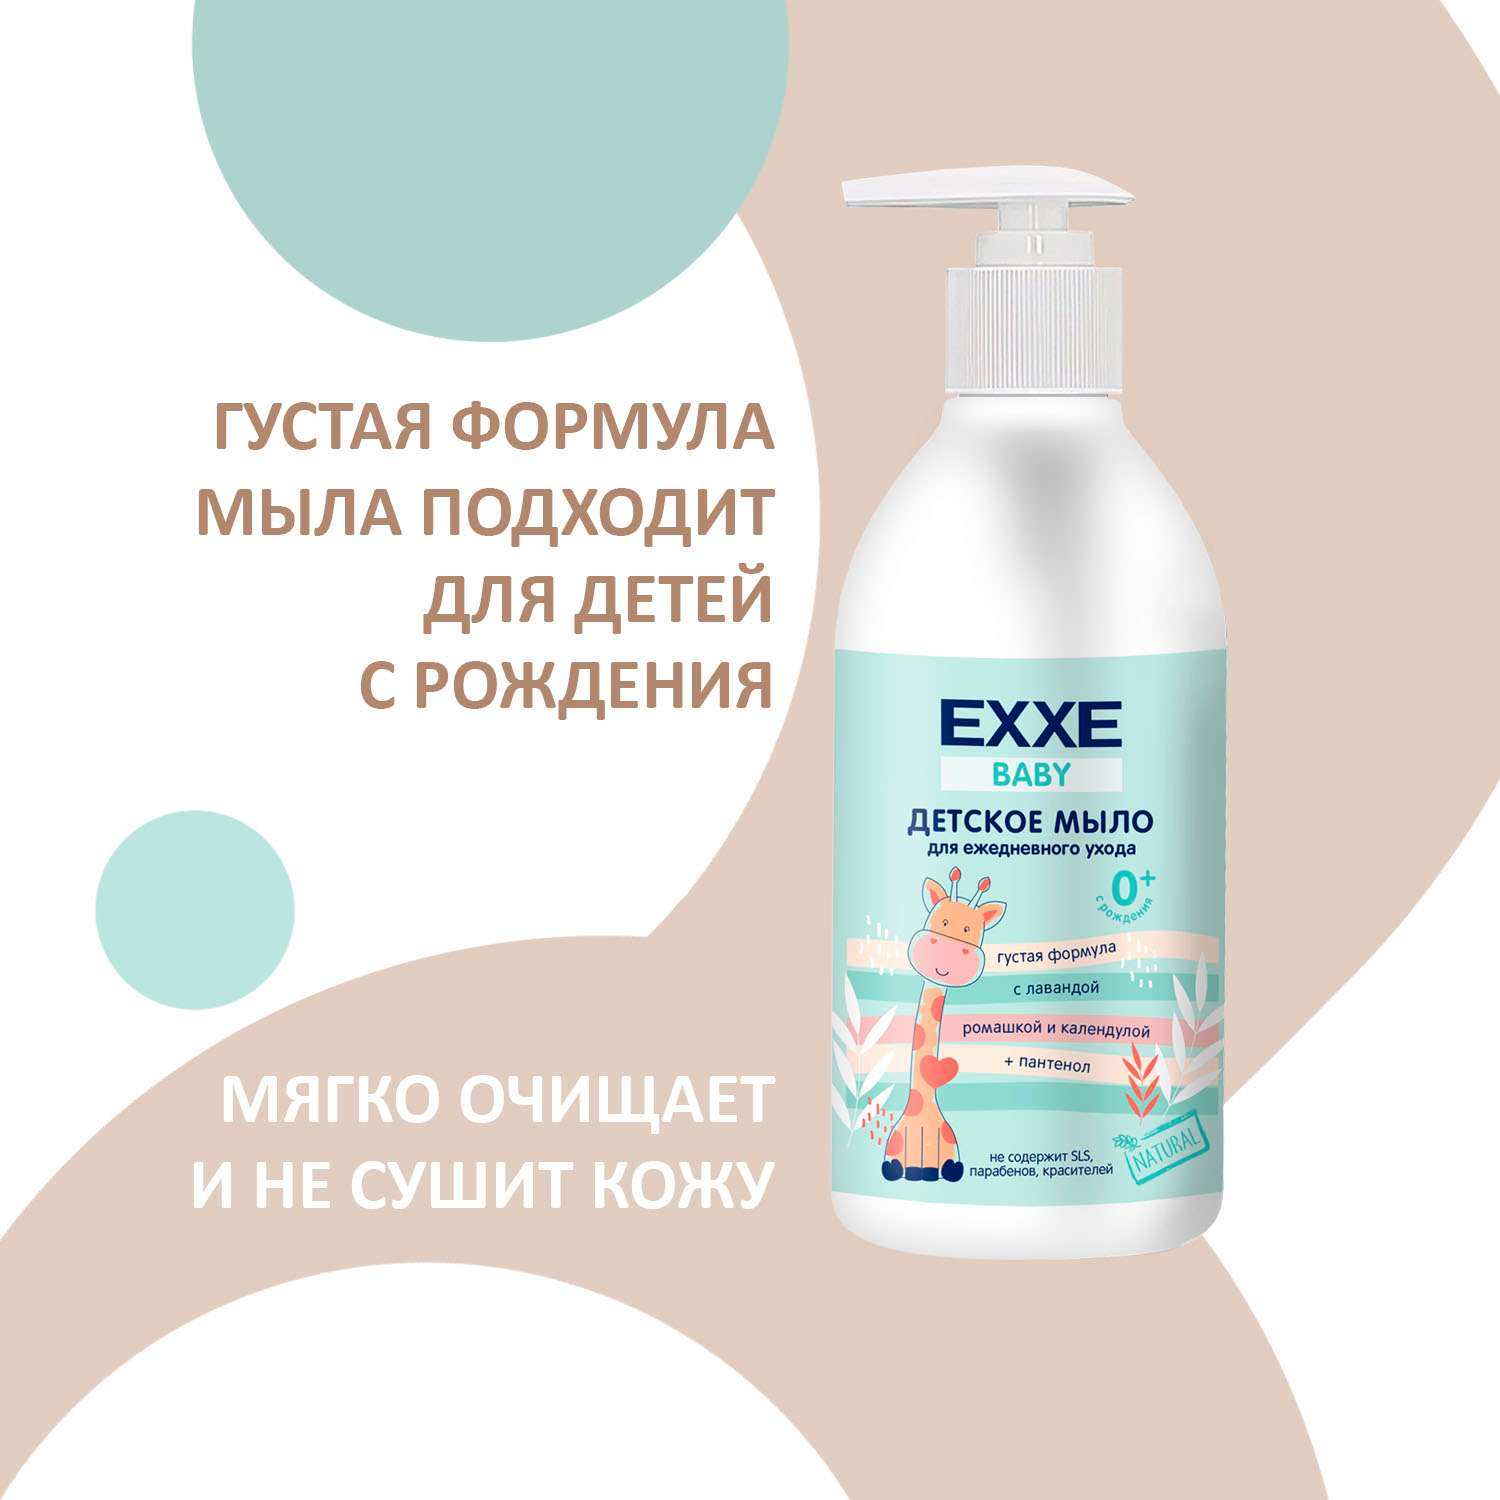 Детский набор 3 EXXE Baby жидкое мыло + шампунь + пенка для купания - фото 11